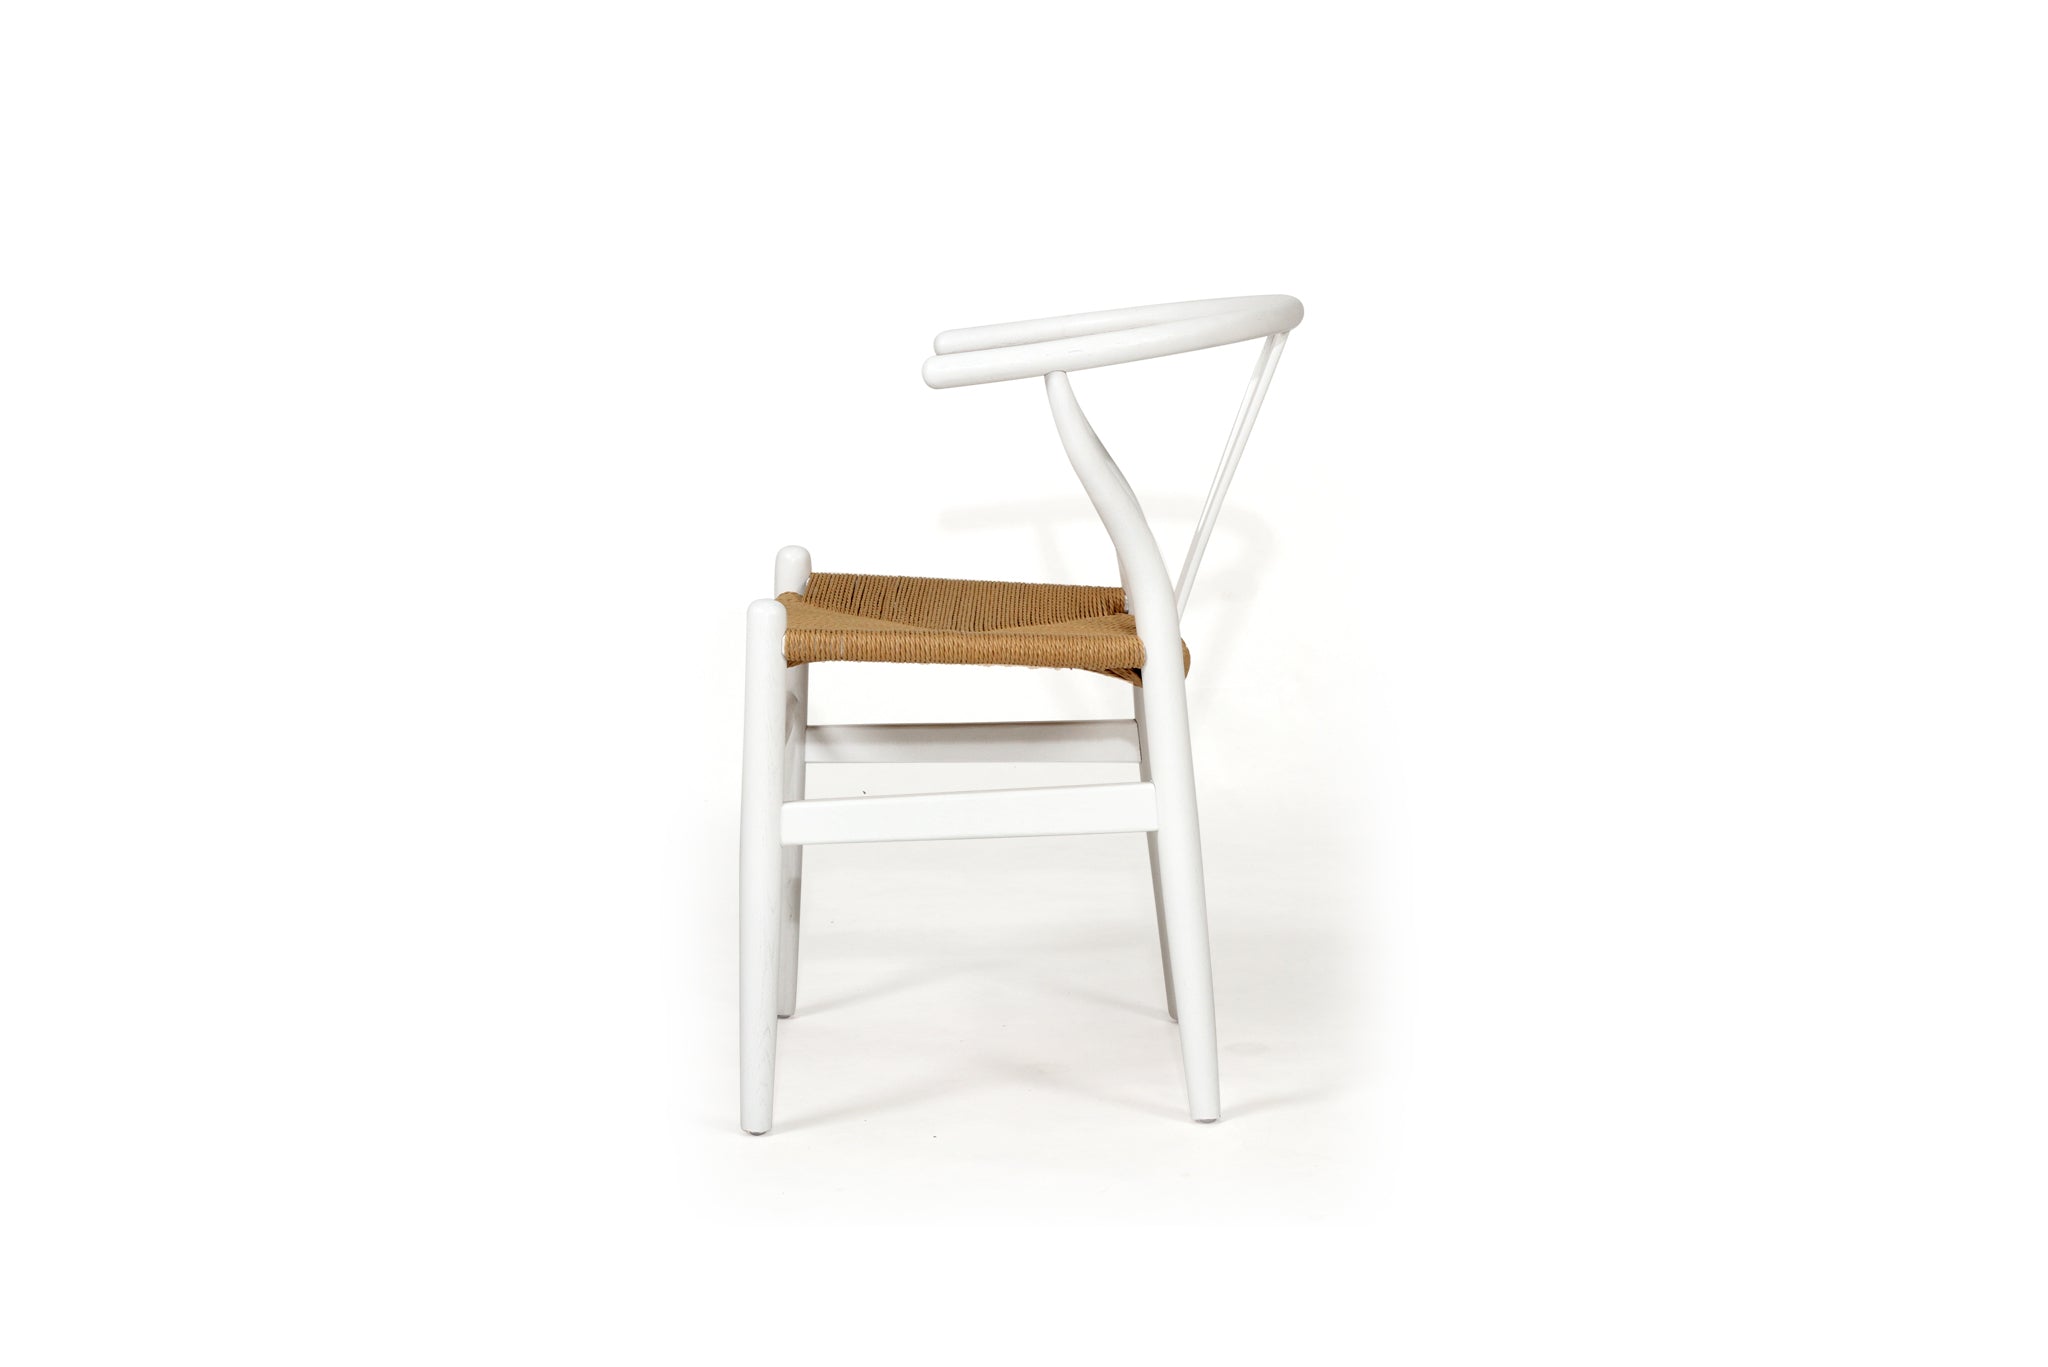 Hans Wegner Wishbone Replica Dining Chair – White